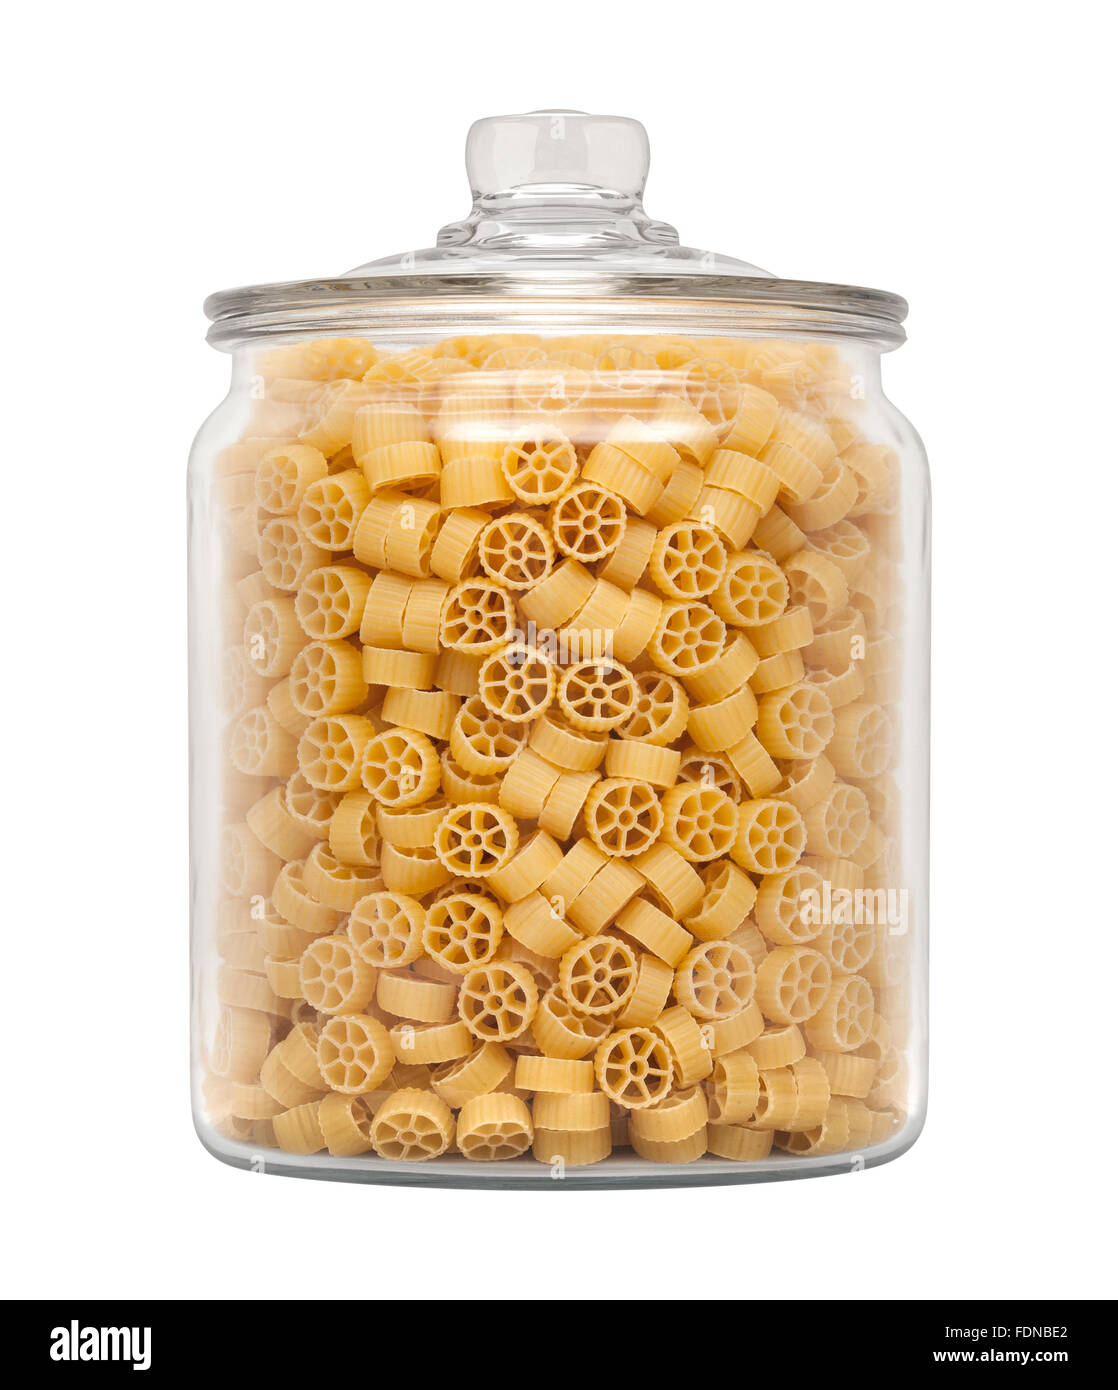 Mini Pasta ruota in un vetro speziale Jar. L'immagine è tagliata, isolato su uno sfondo bianco. Foto Stock